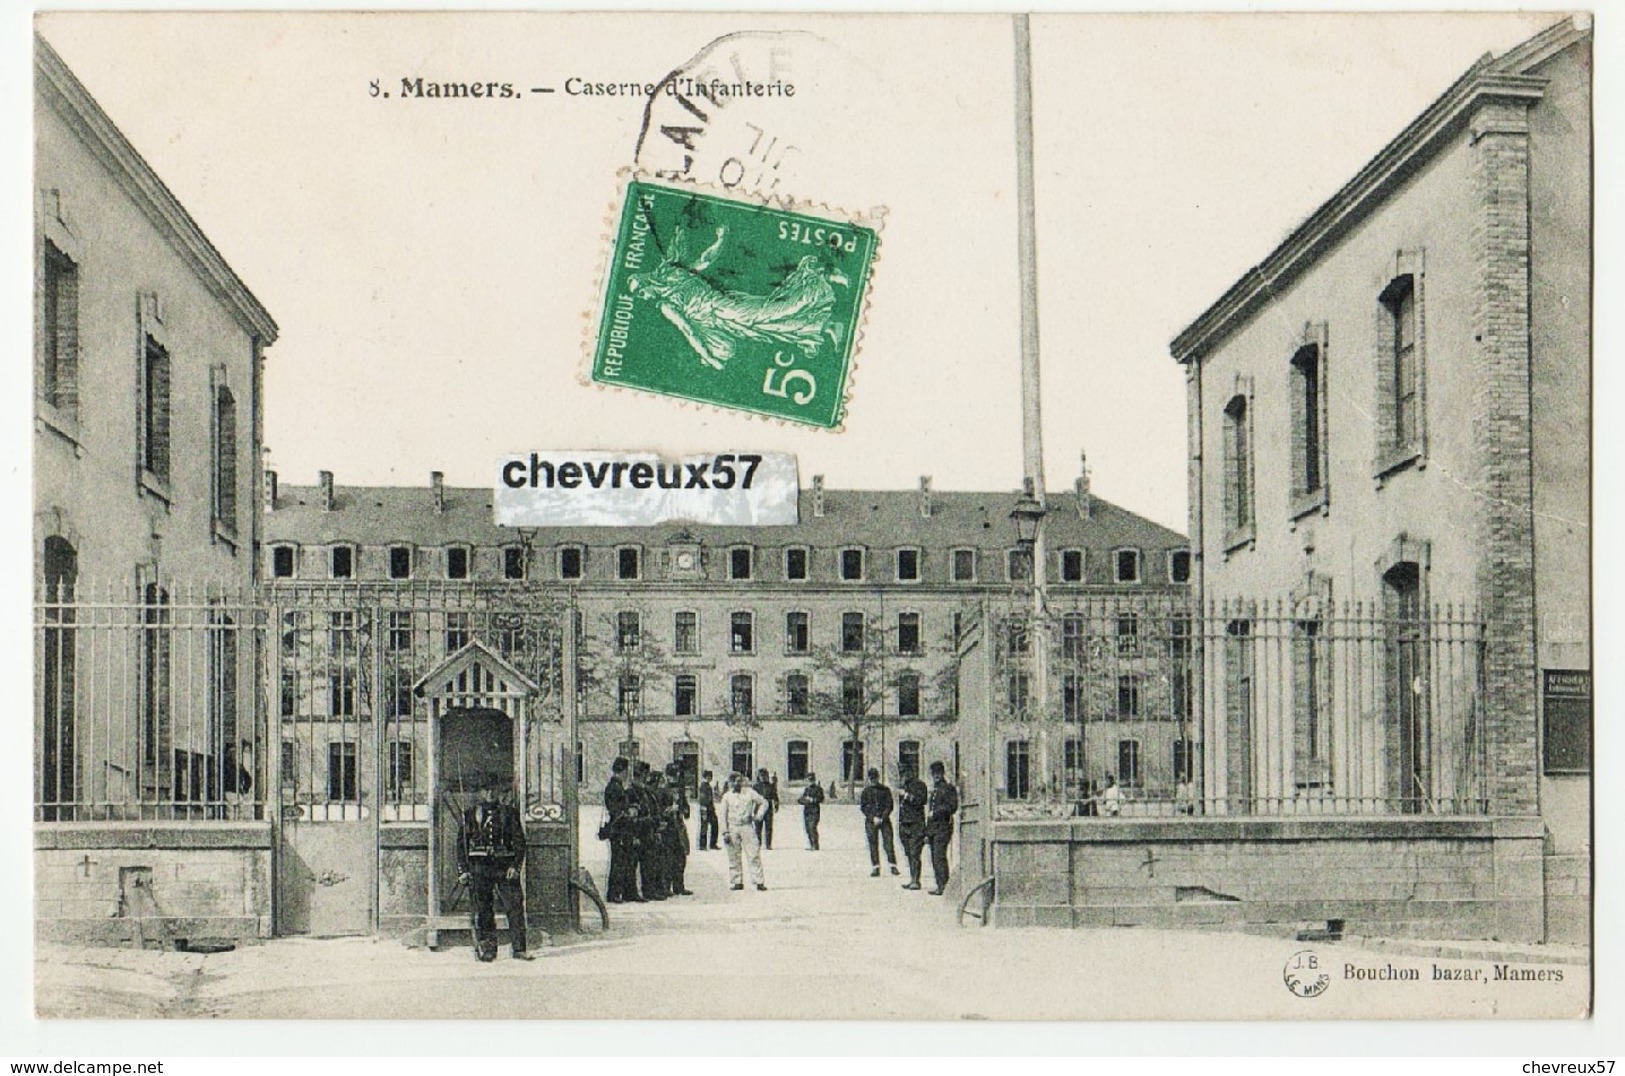 LOT 1 - 30 cartes anciennes - Calvados et divers FRANCE